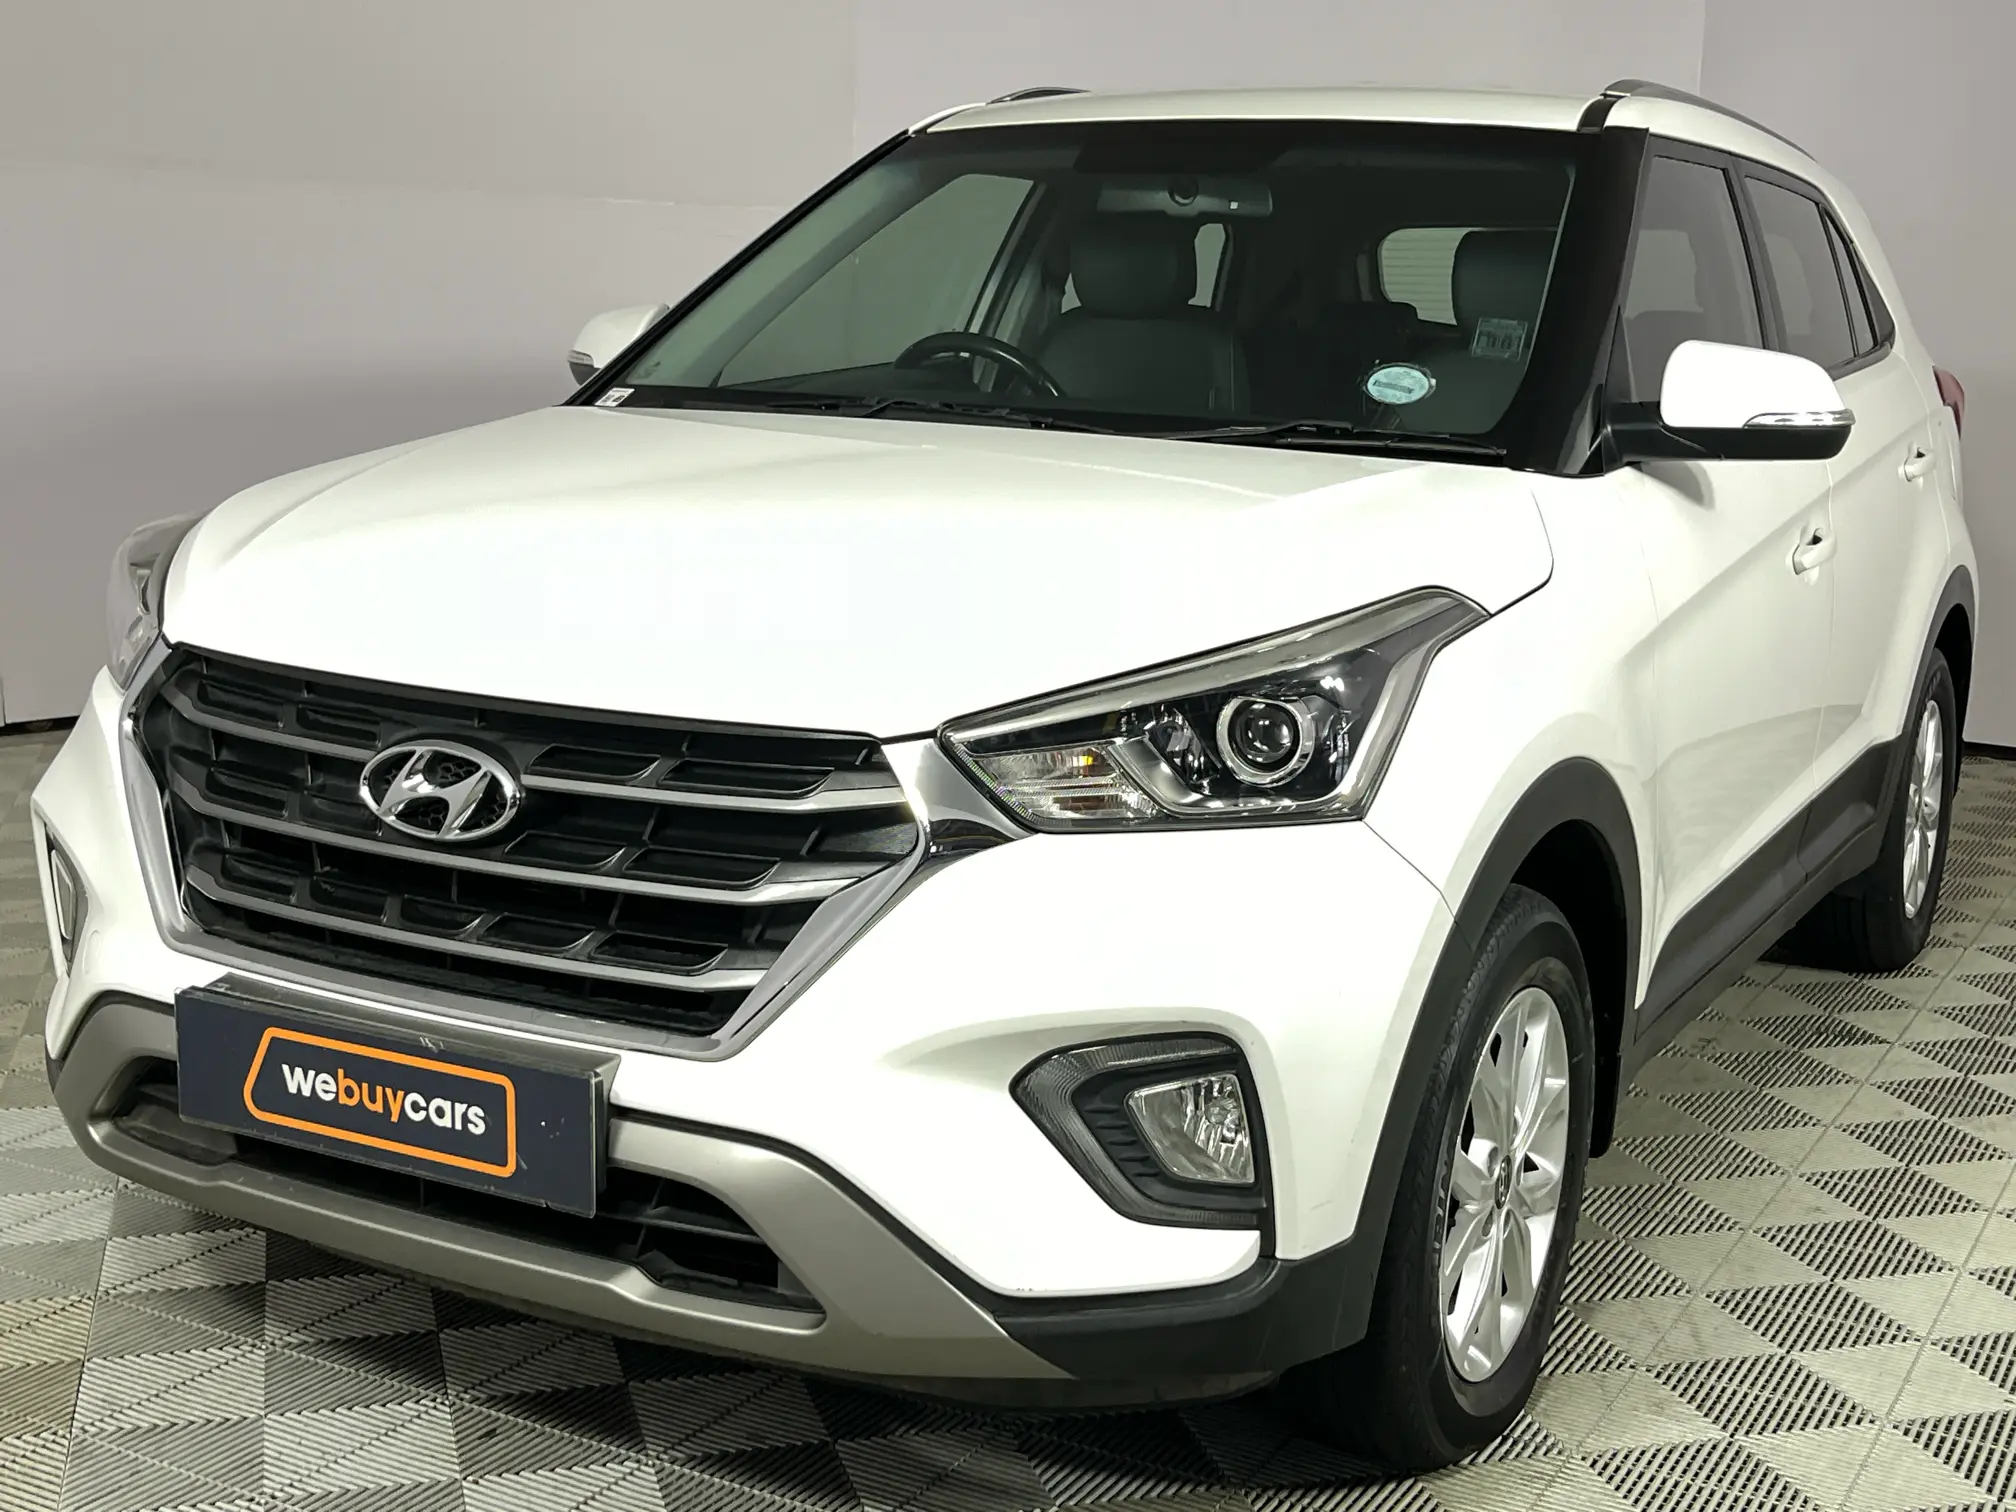 2019 Hyundai Creta 1.6 Executive